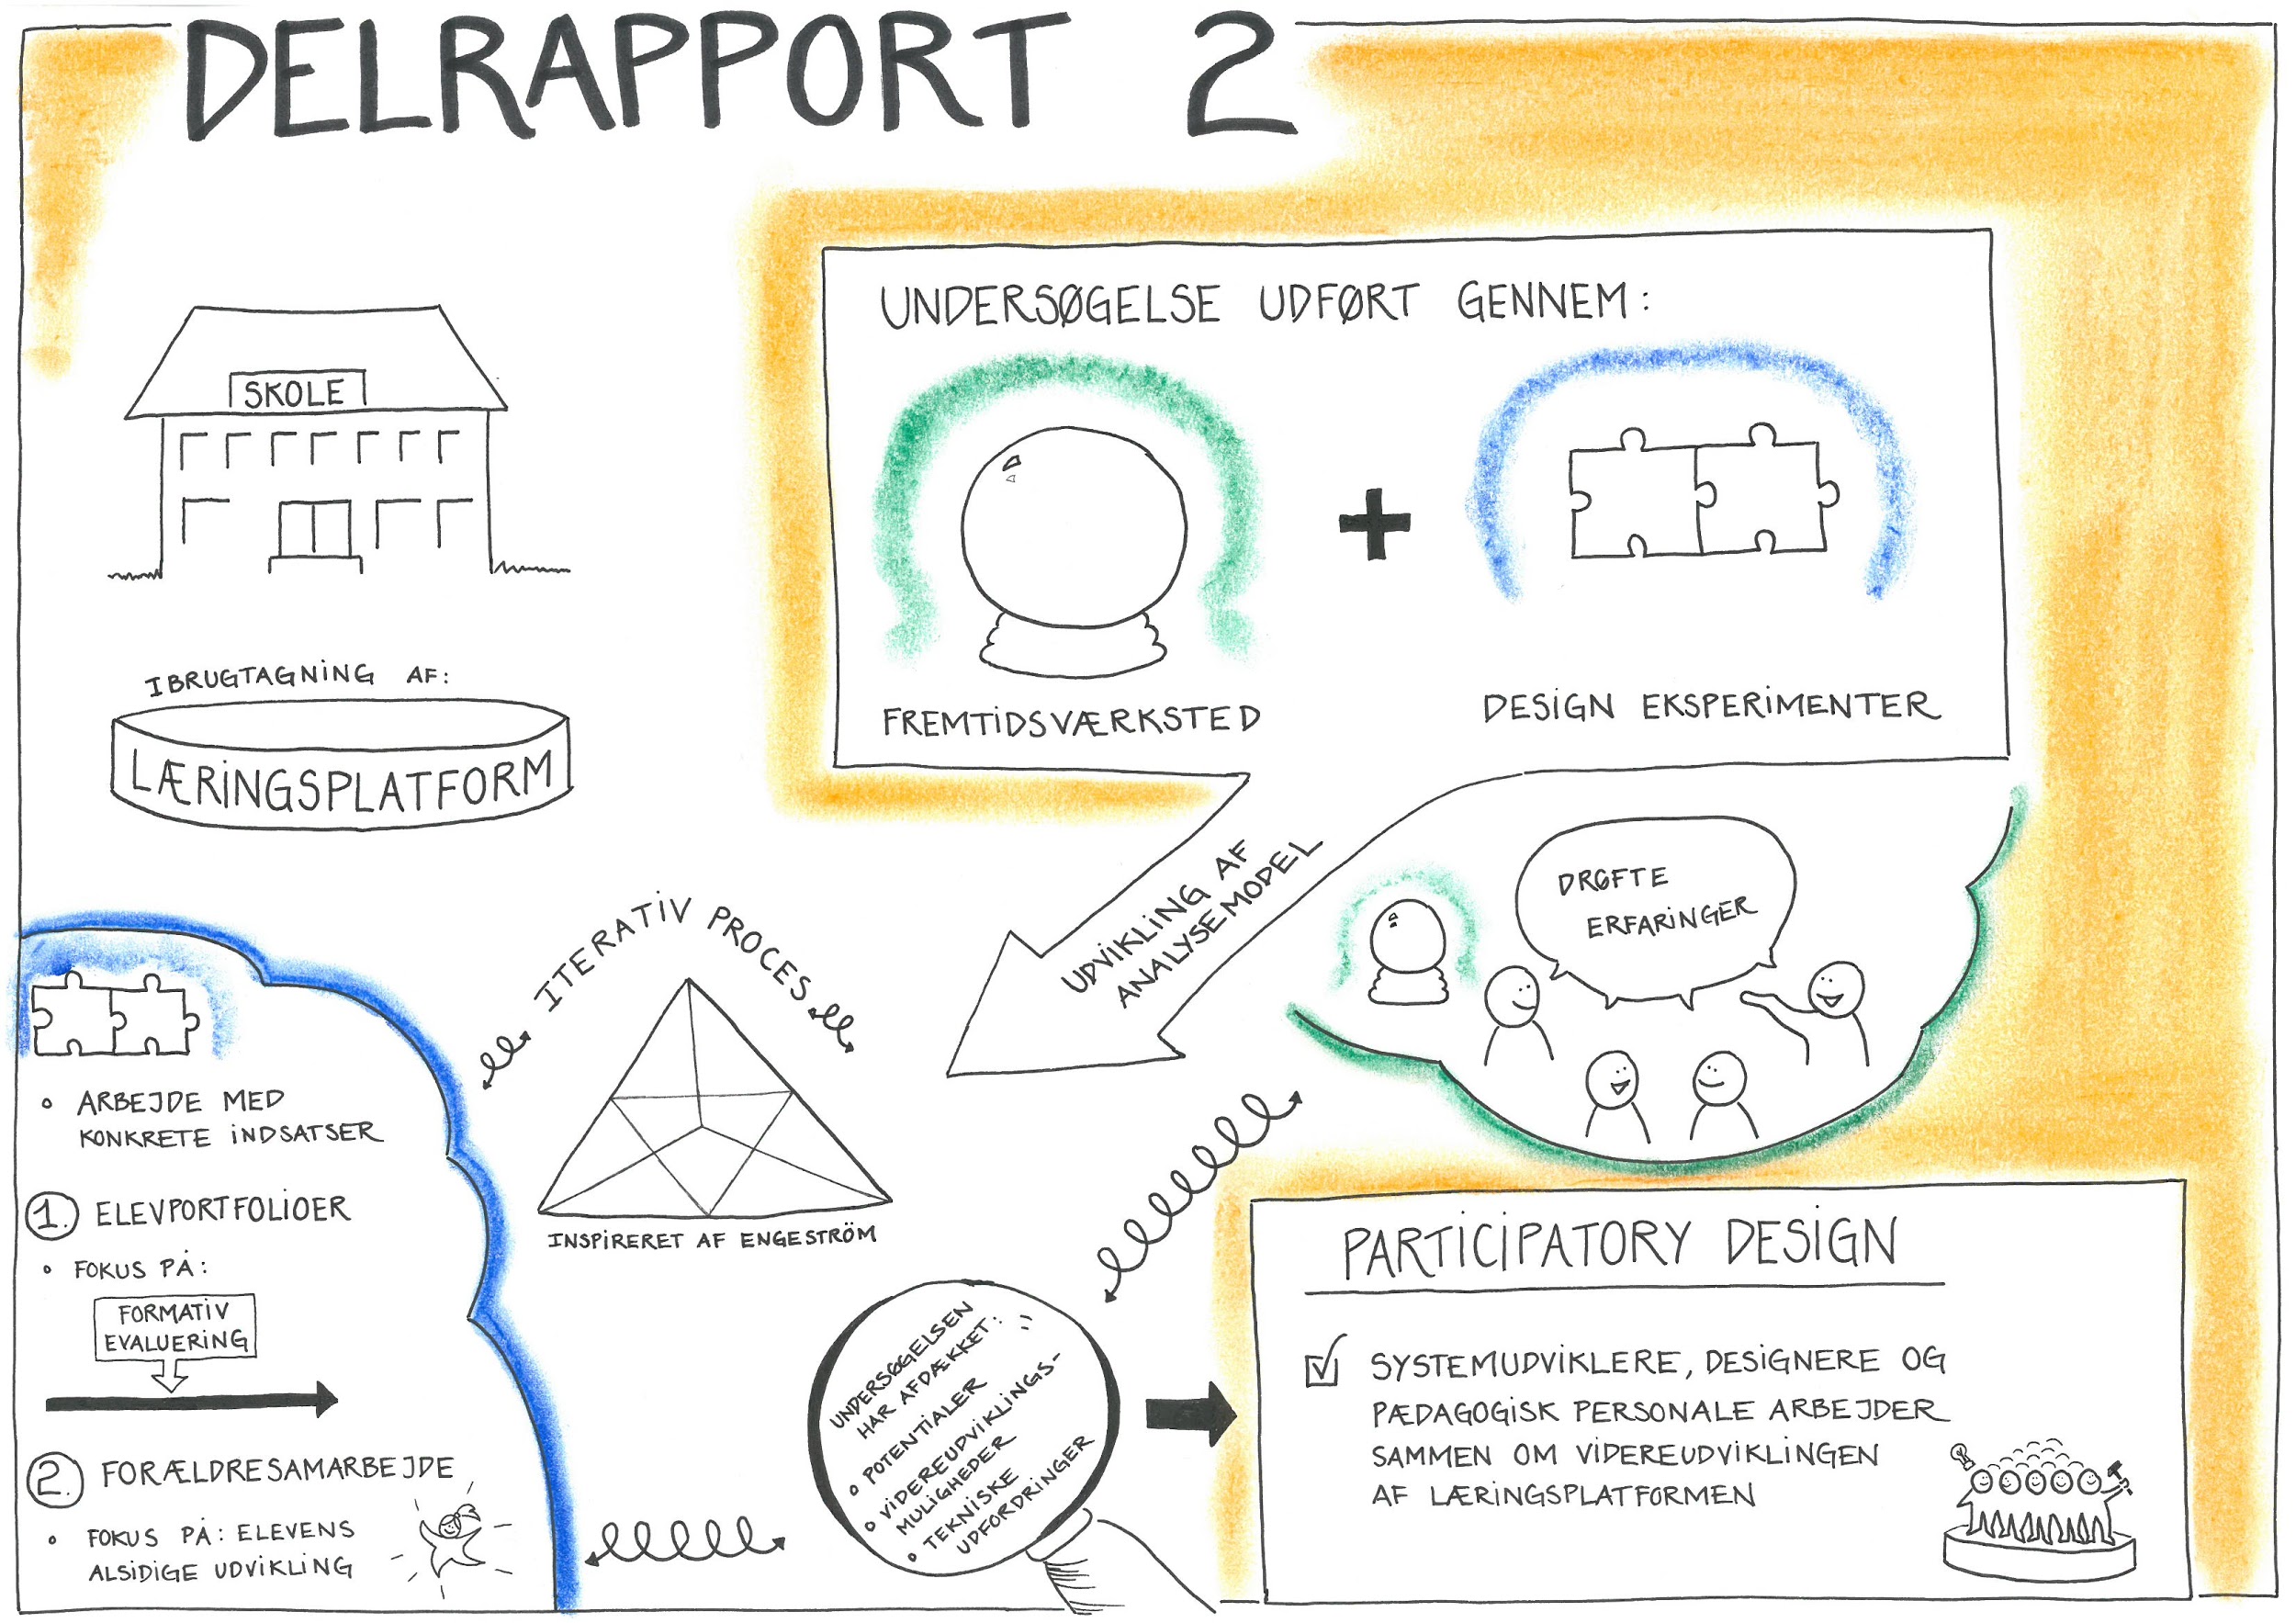 Læringsplatforme - Delrapport 2